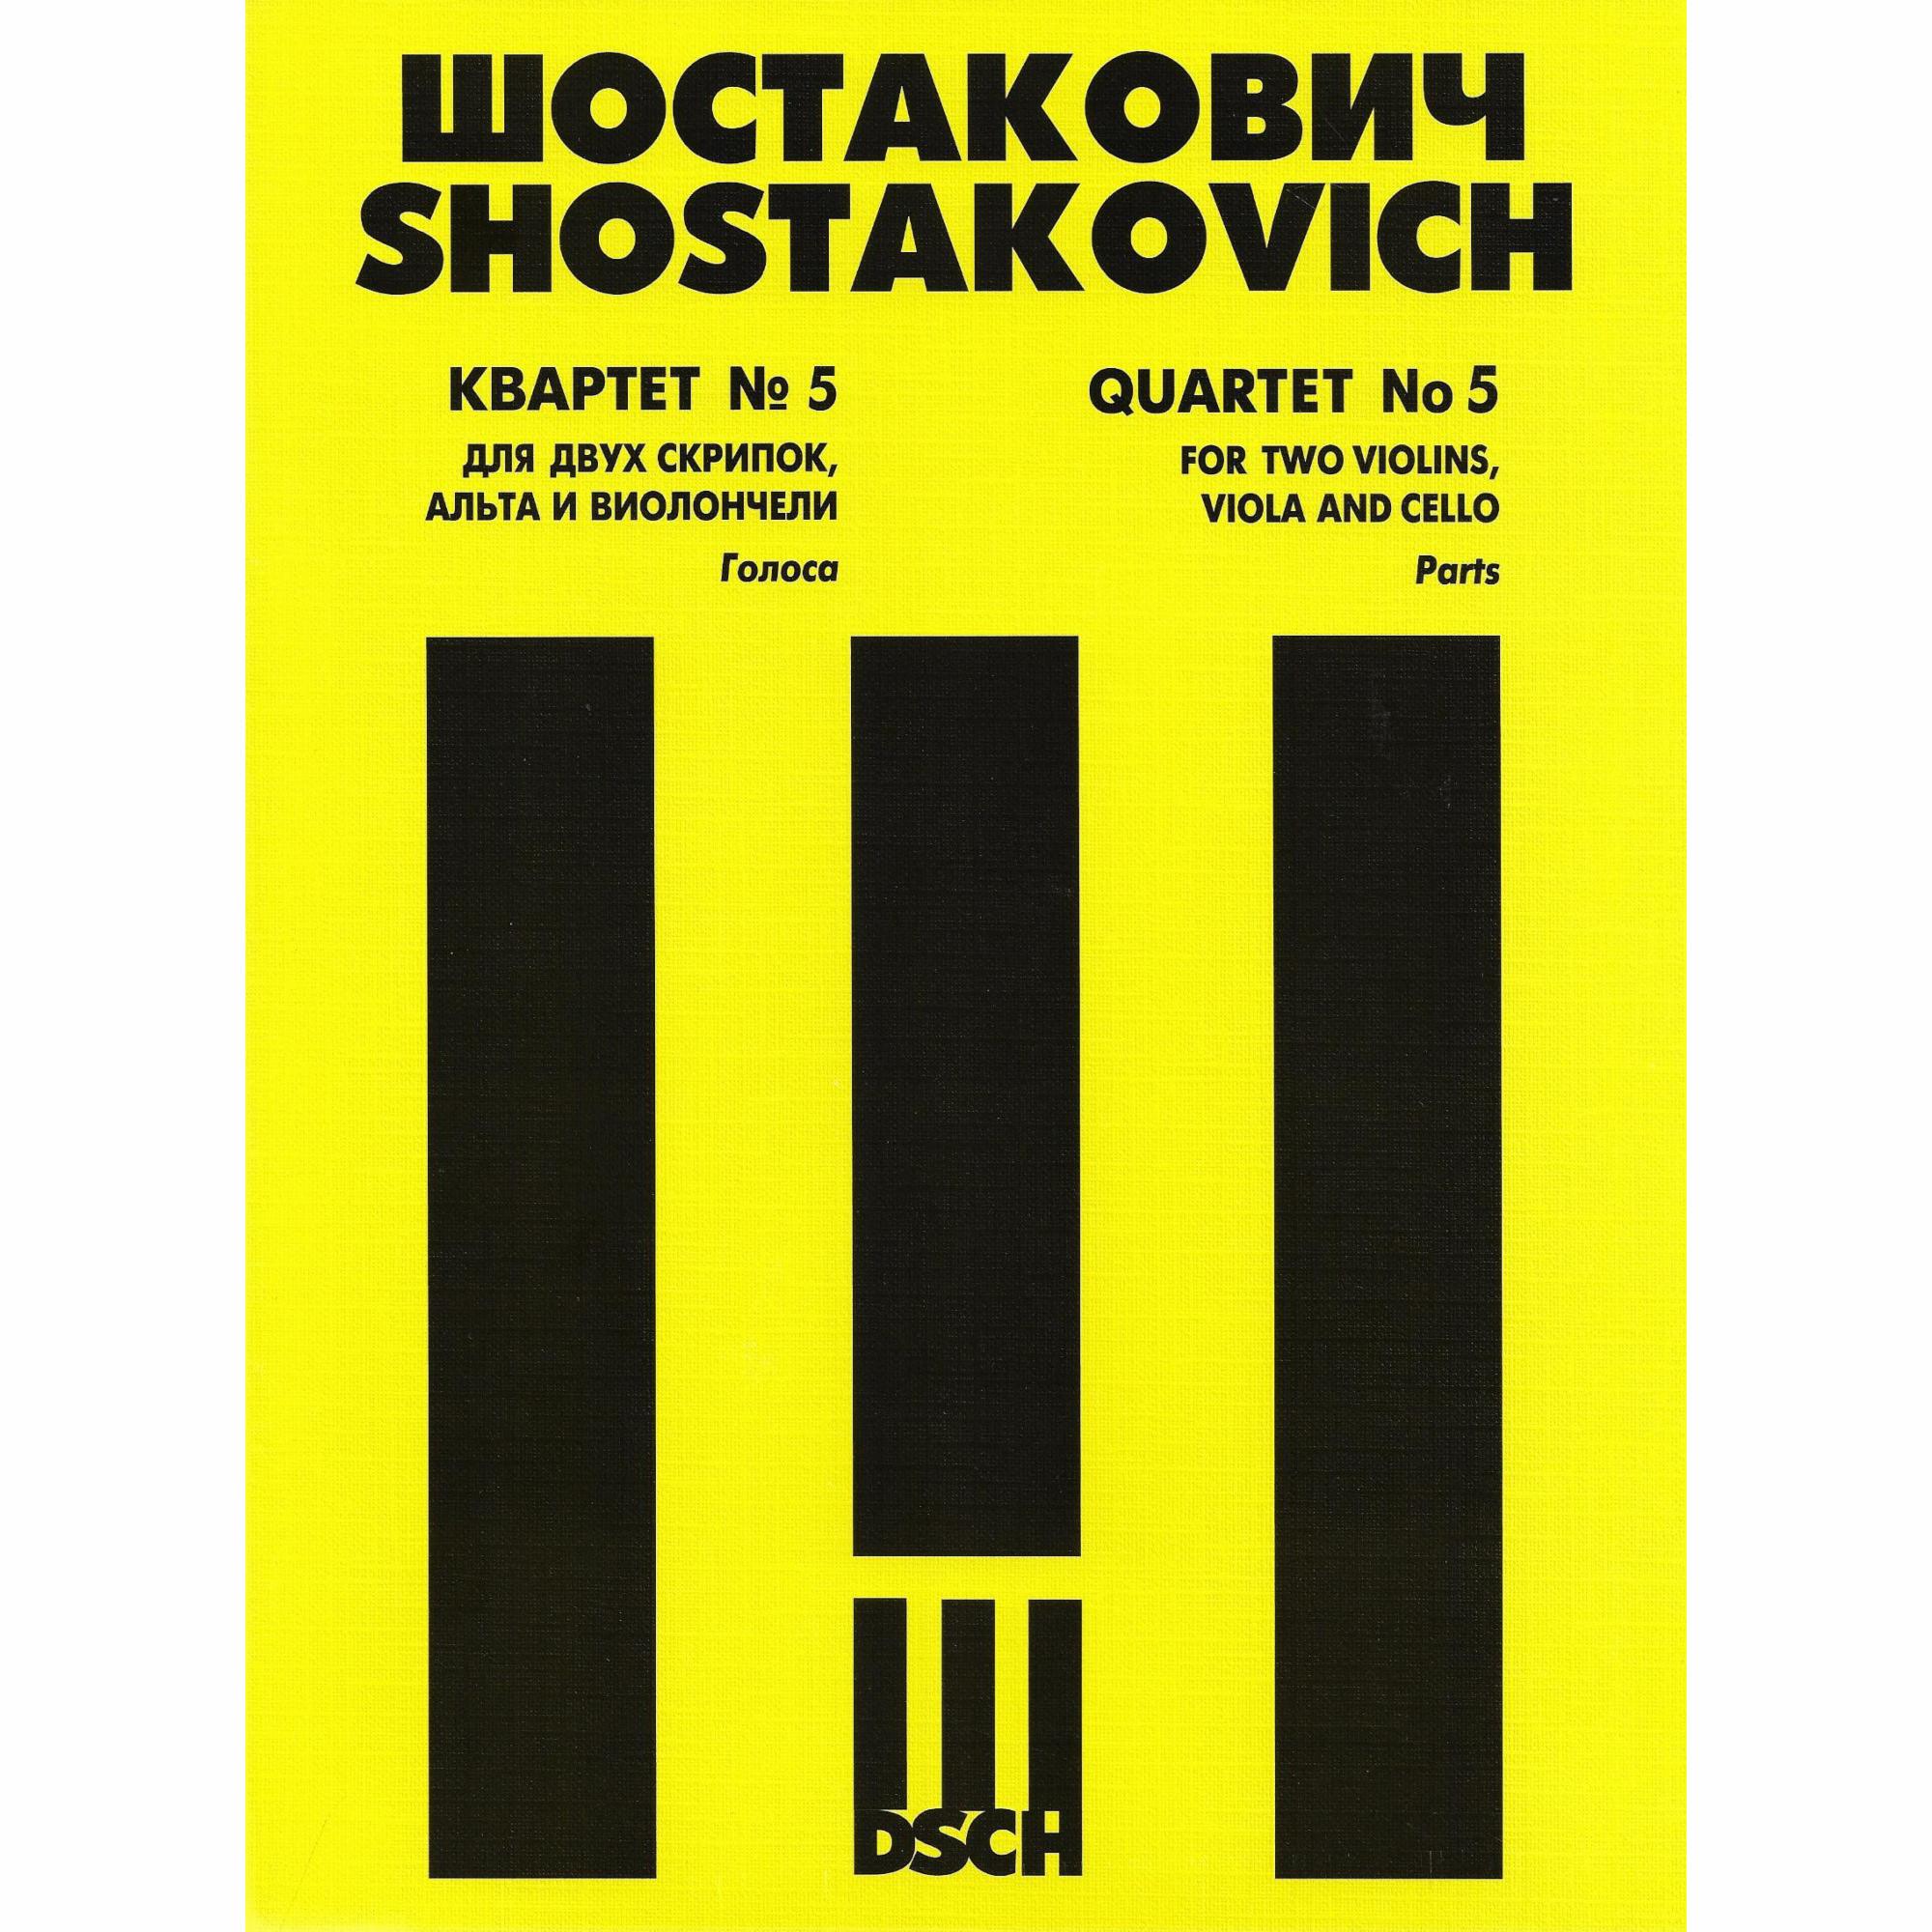 Shostakovich -- String Quartet No. 5